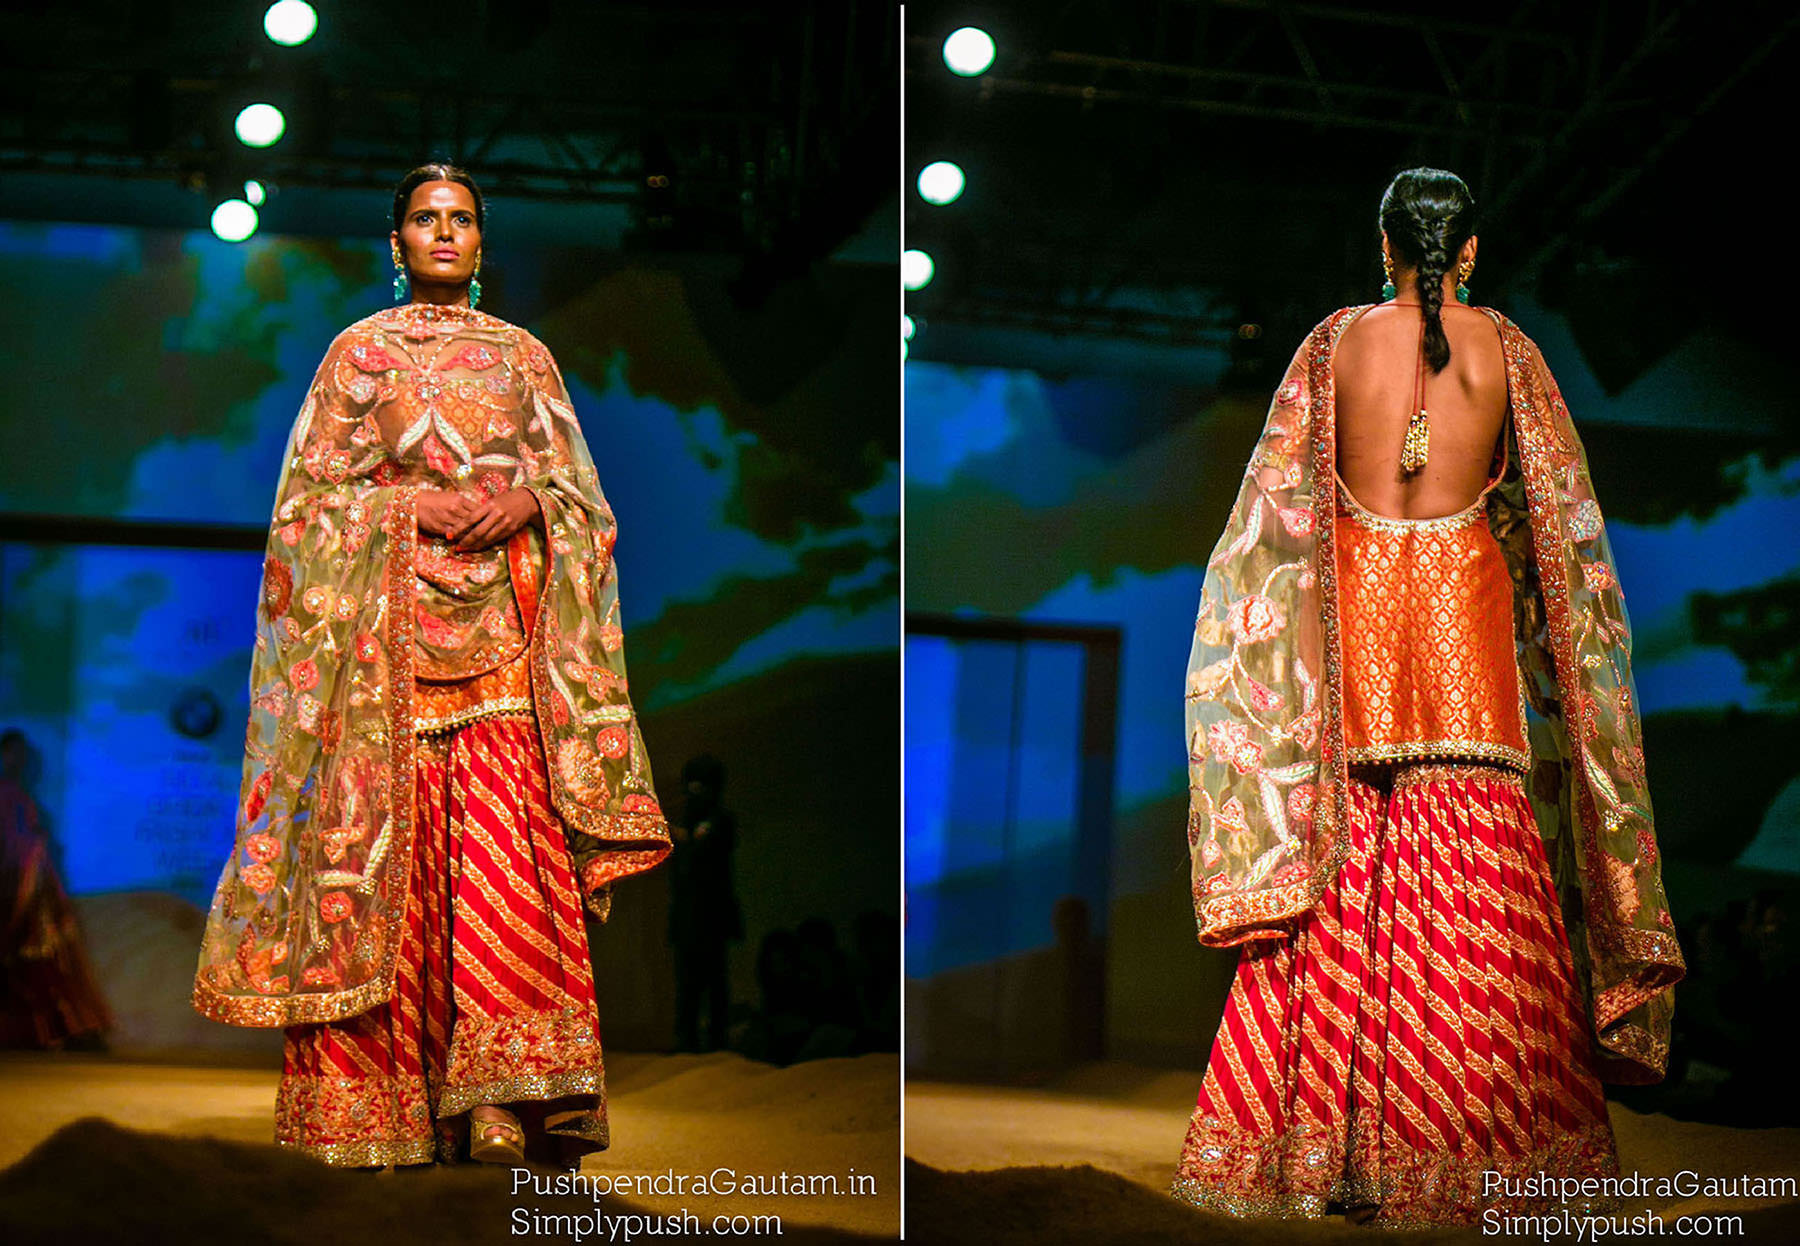 Ashima-Leena-bmw-india-bridal-fashion-week-pushpendragautam-pics-event-lifestyle-photographer-india